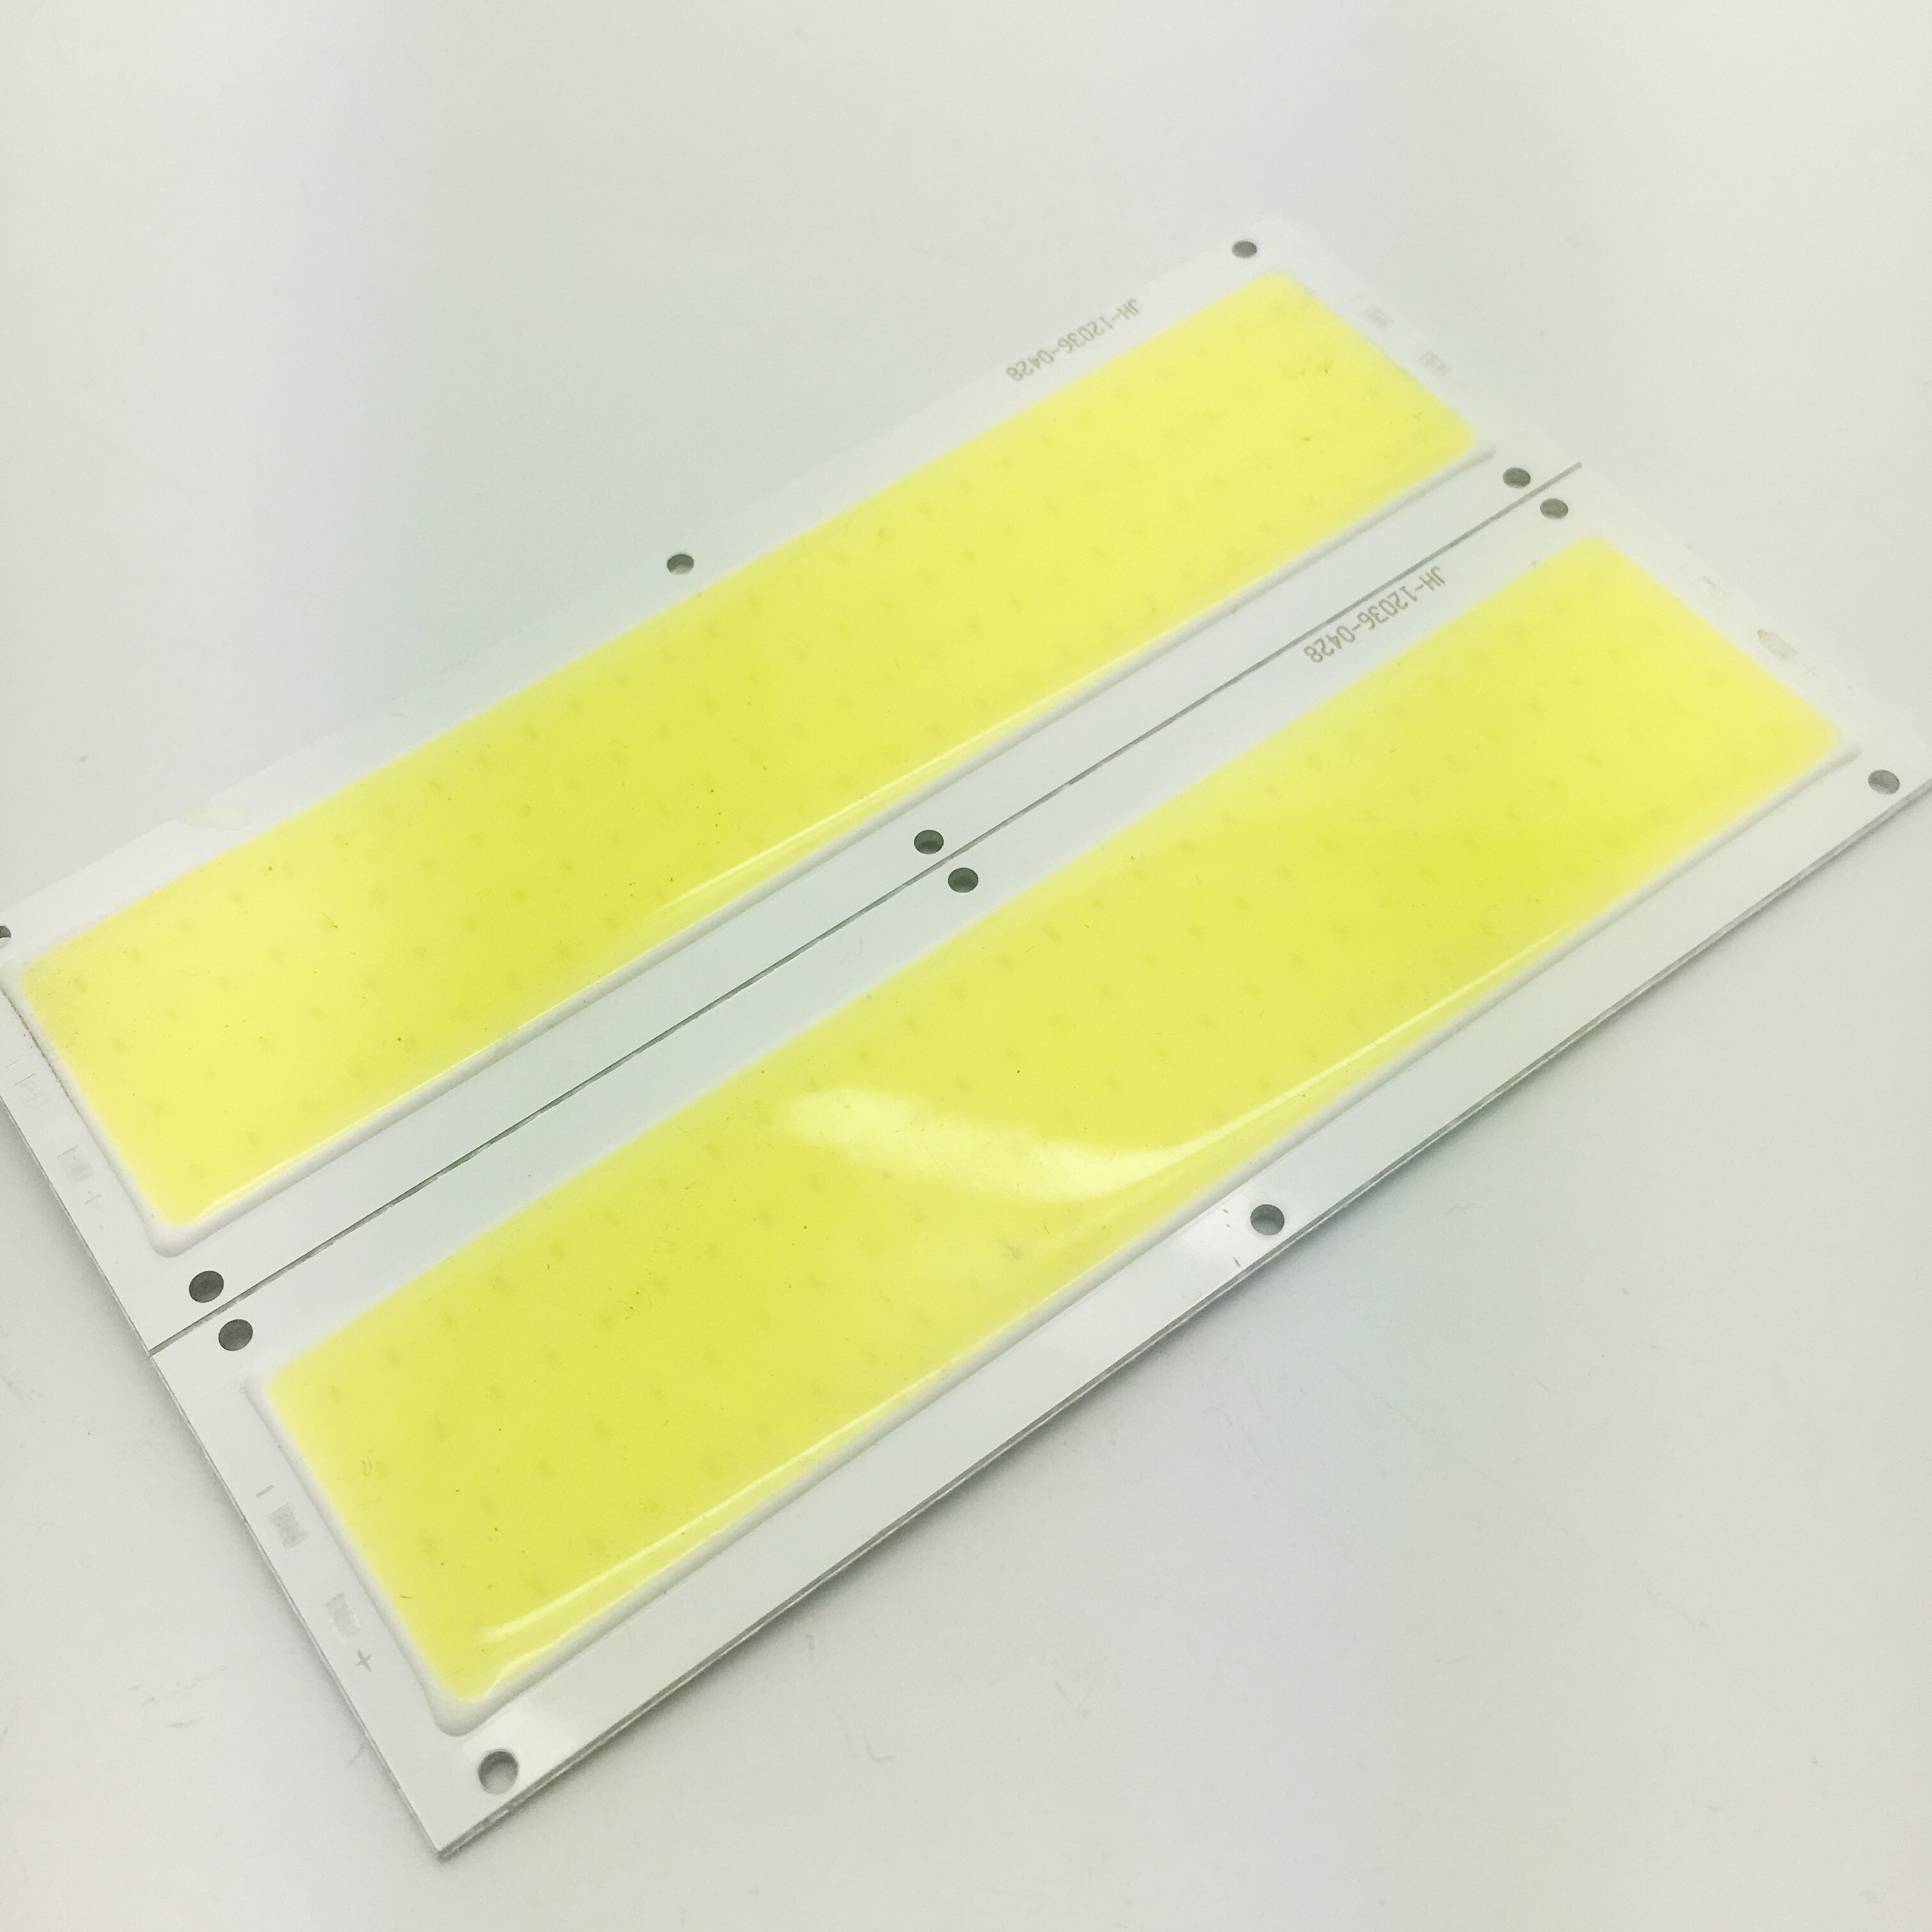 Promation 10w 12v strip cob led chips høj lumen hvid farve til arbejdslamper